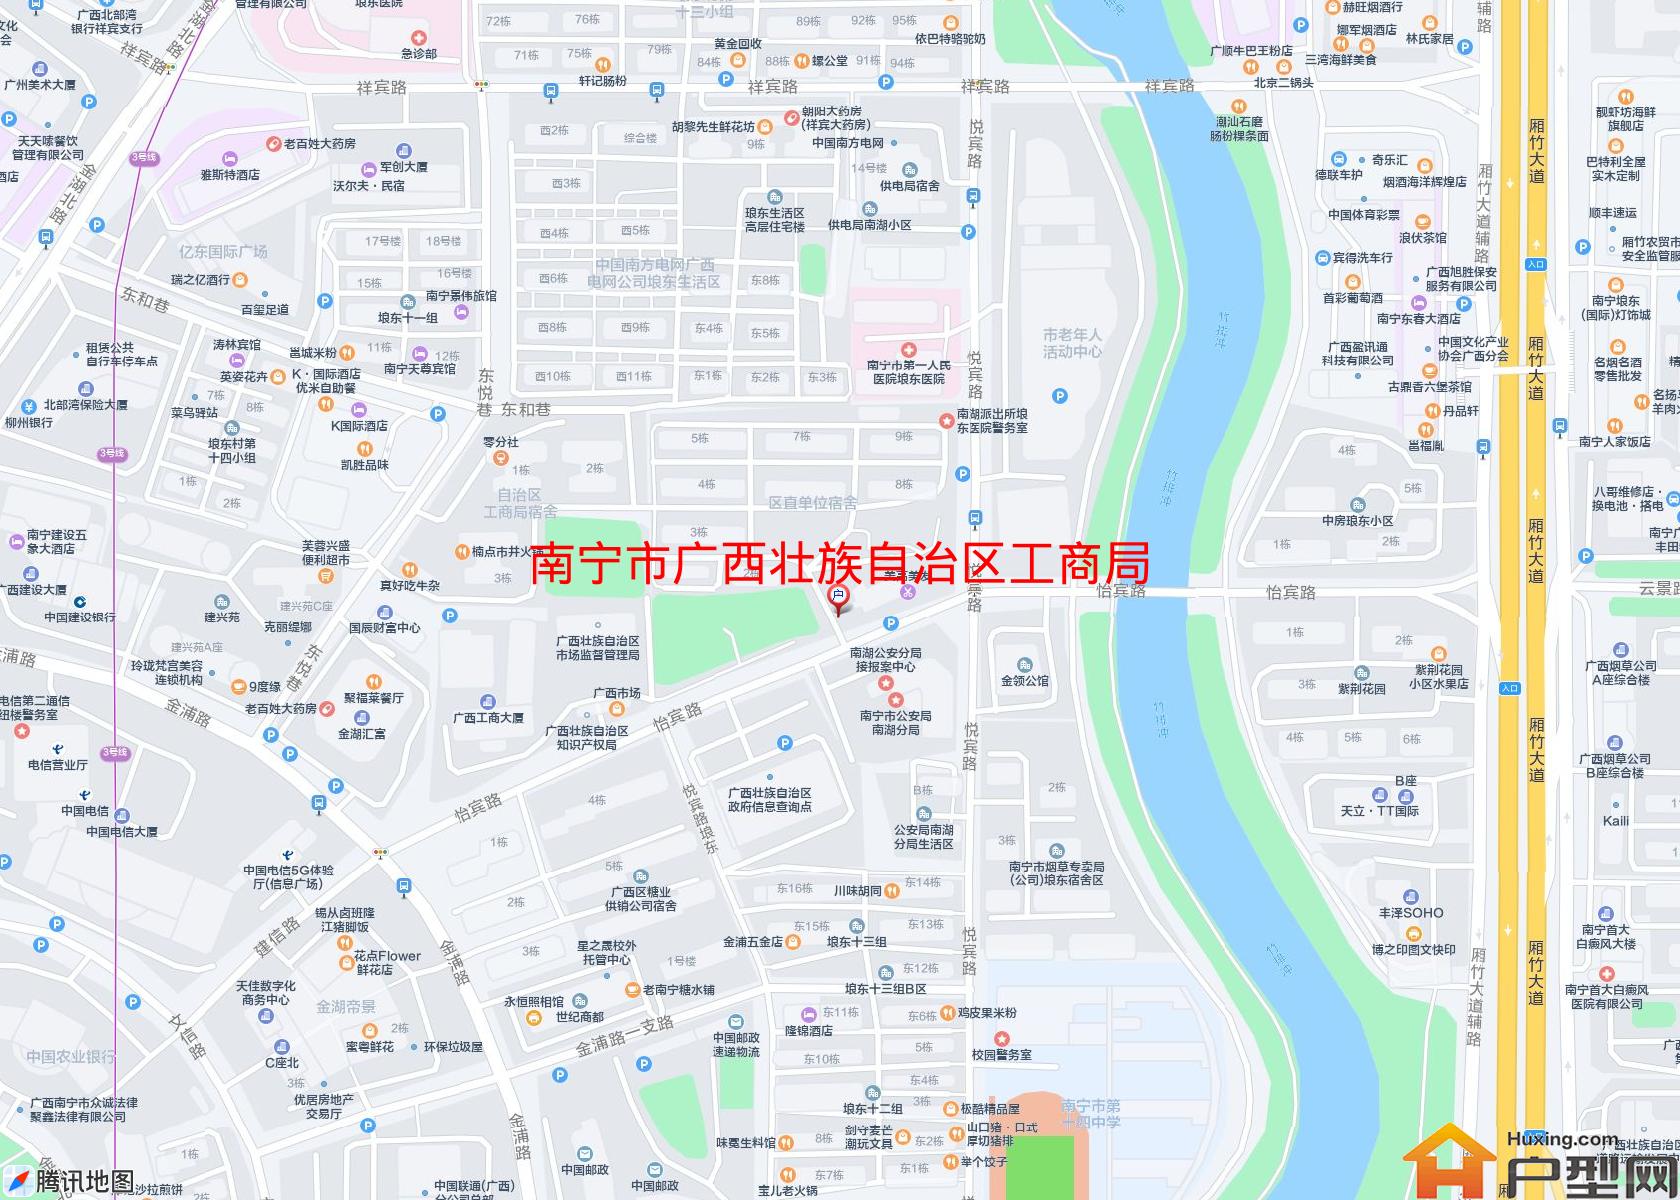 广西壮族自治区工商局宿舍小区 - 户型网